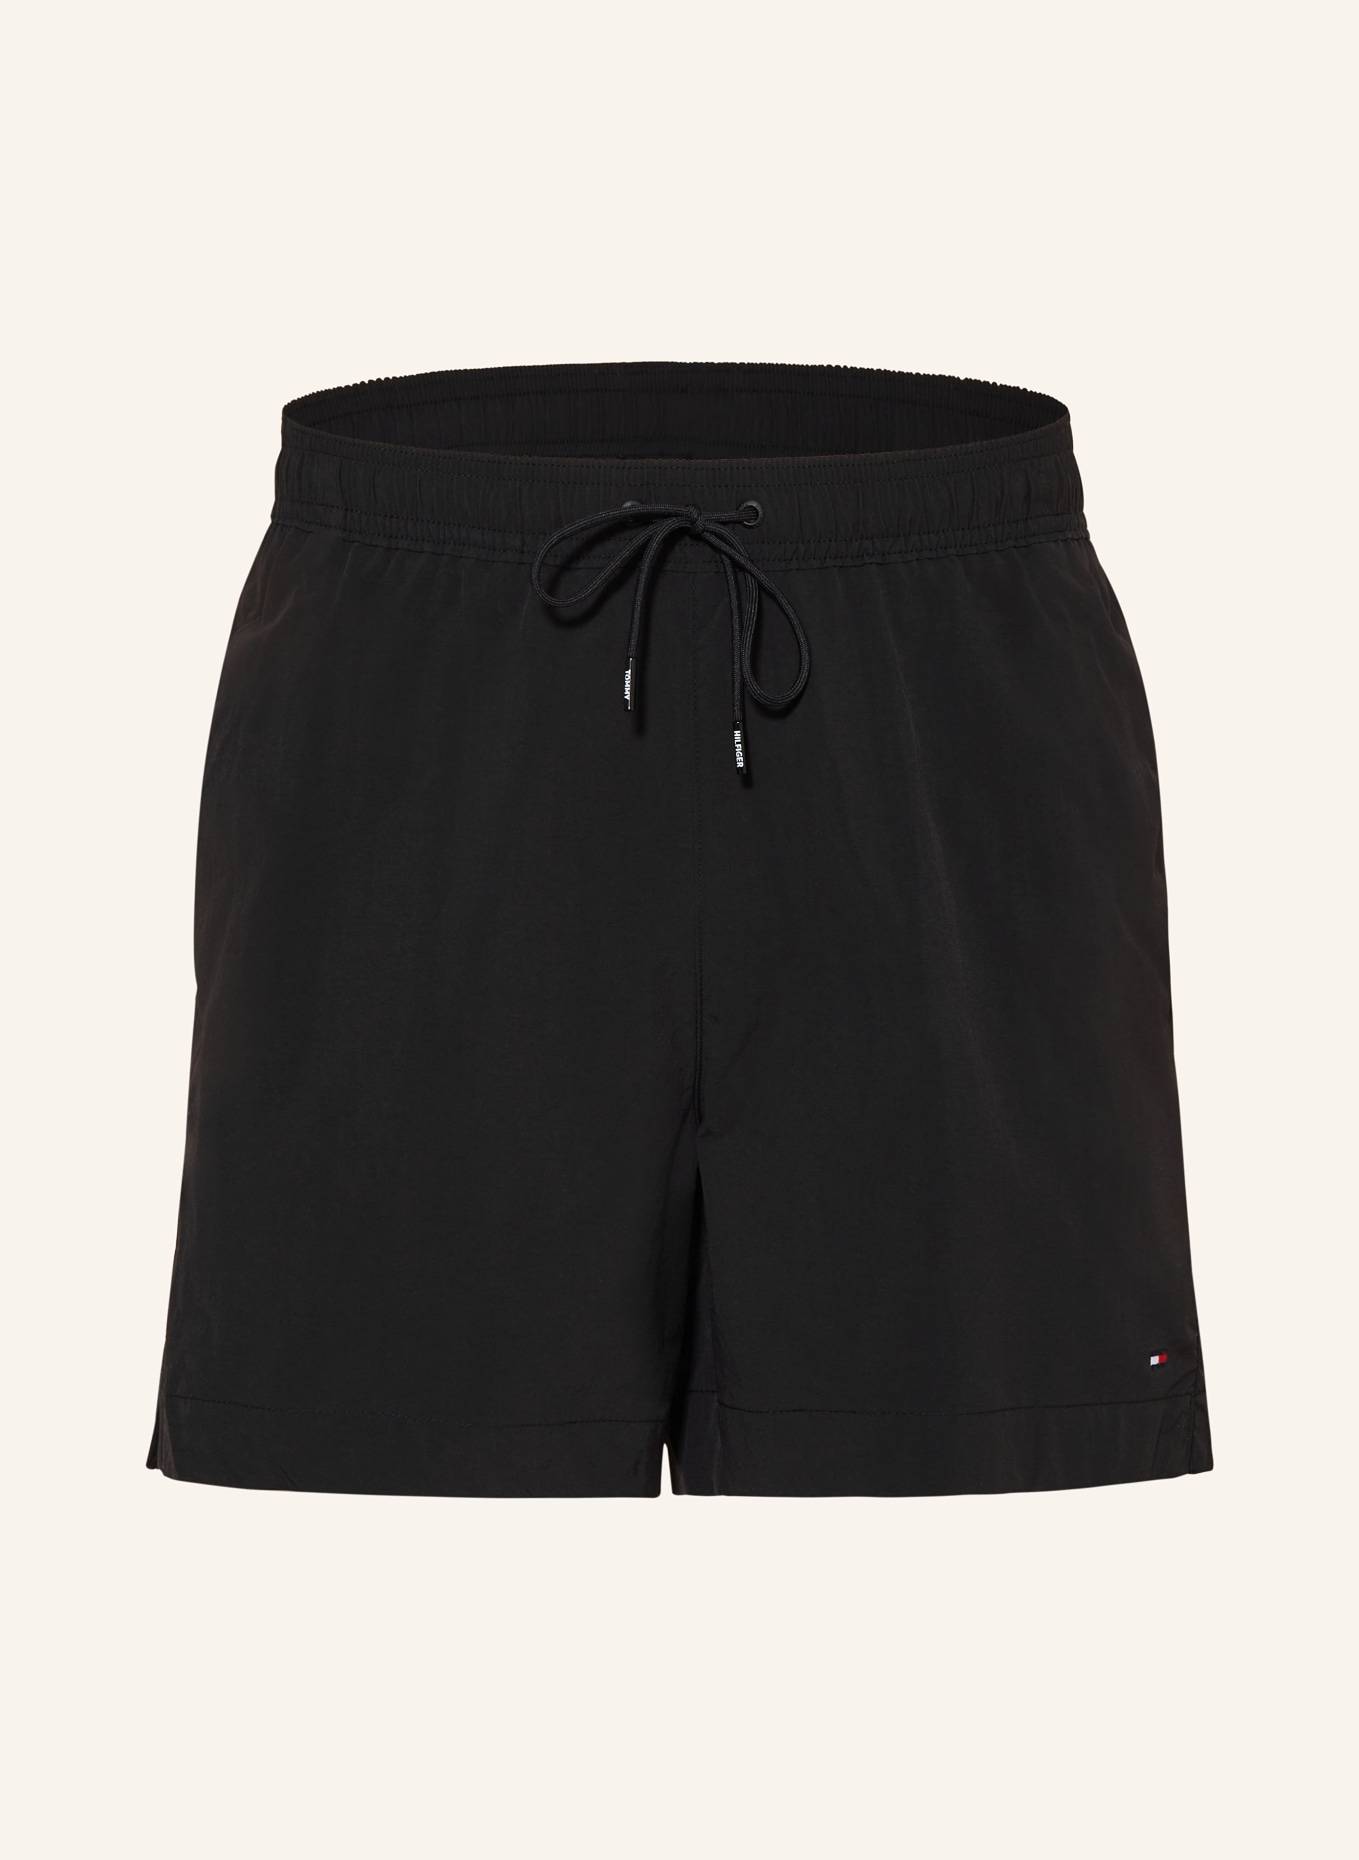 TOMMY HILFIGER Swim shorts, Color: BLACK (Image 1)